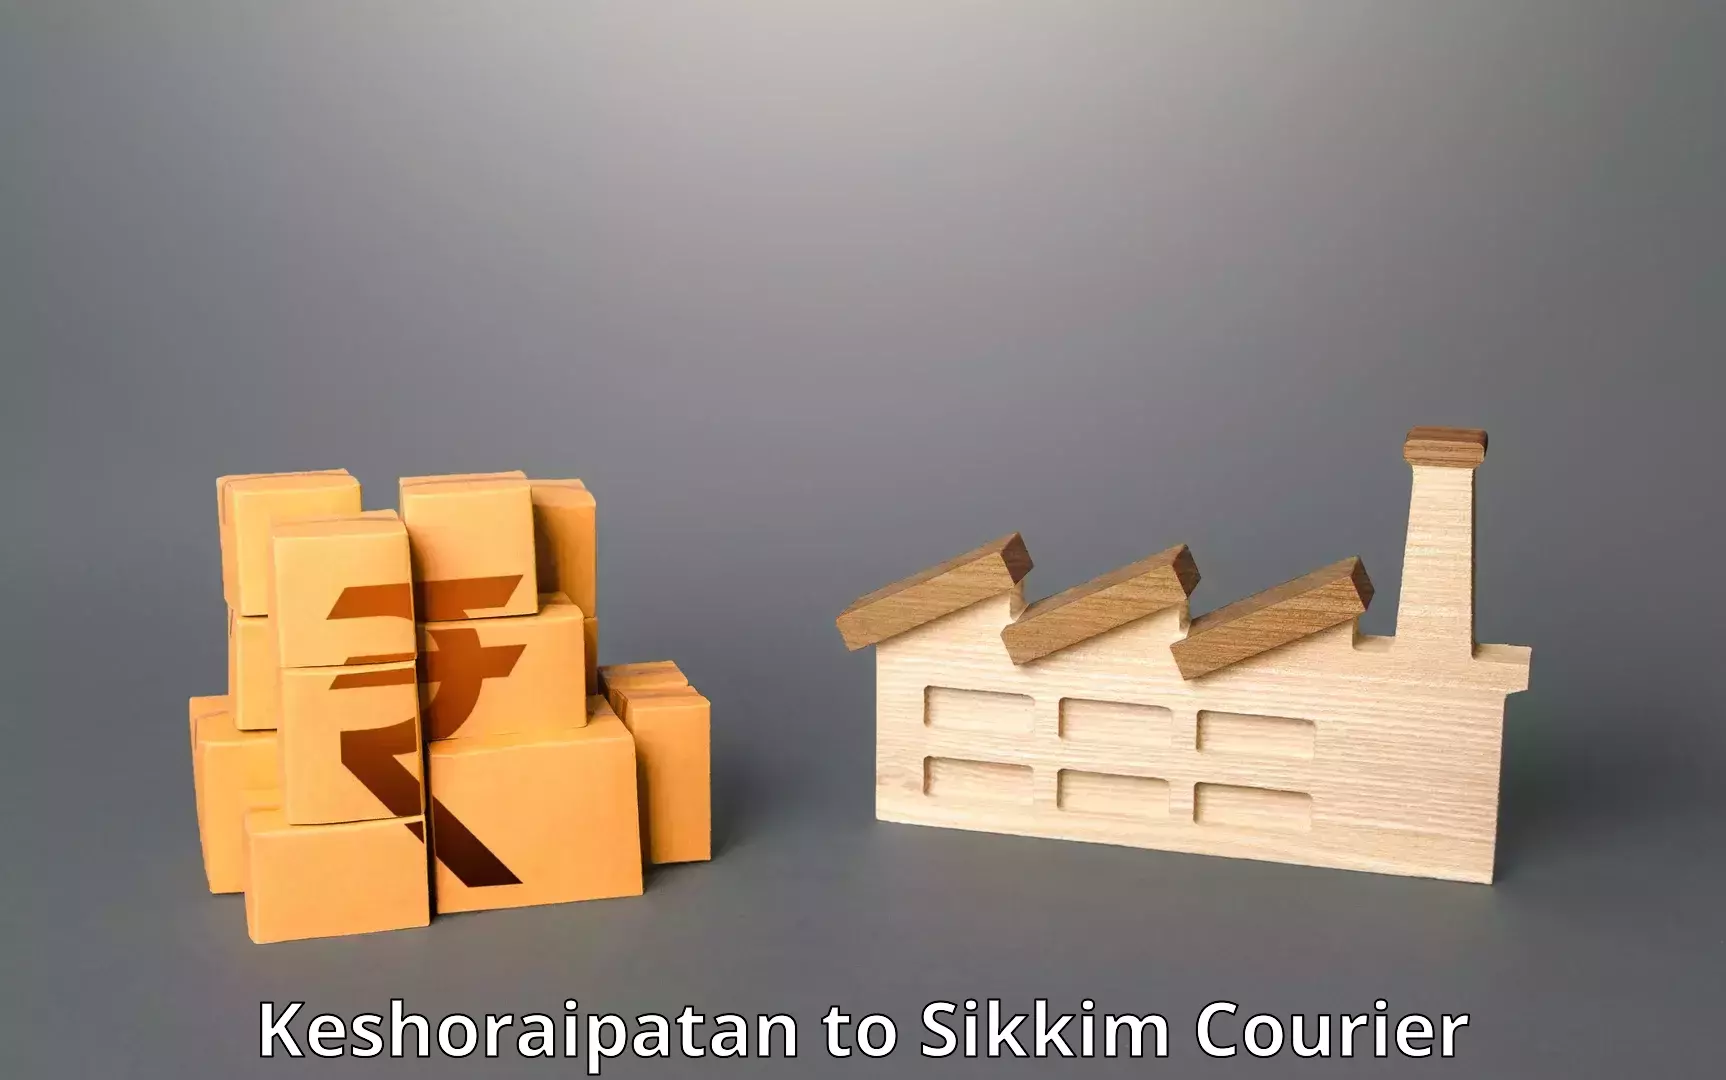 International shipping rates in Keshoraipatan to Sikkim